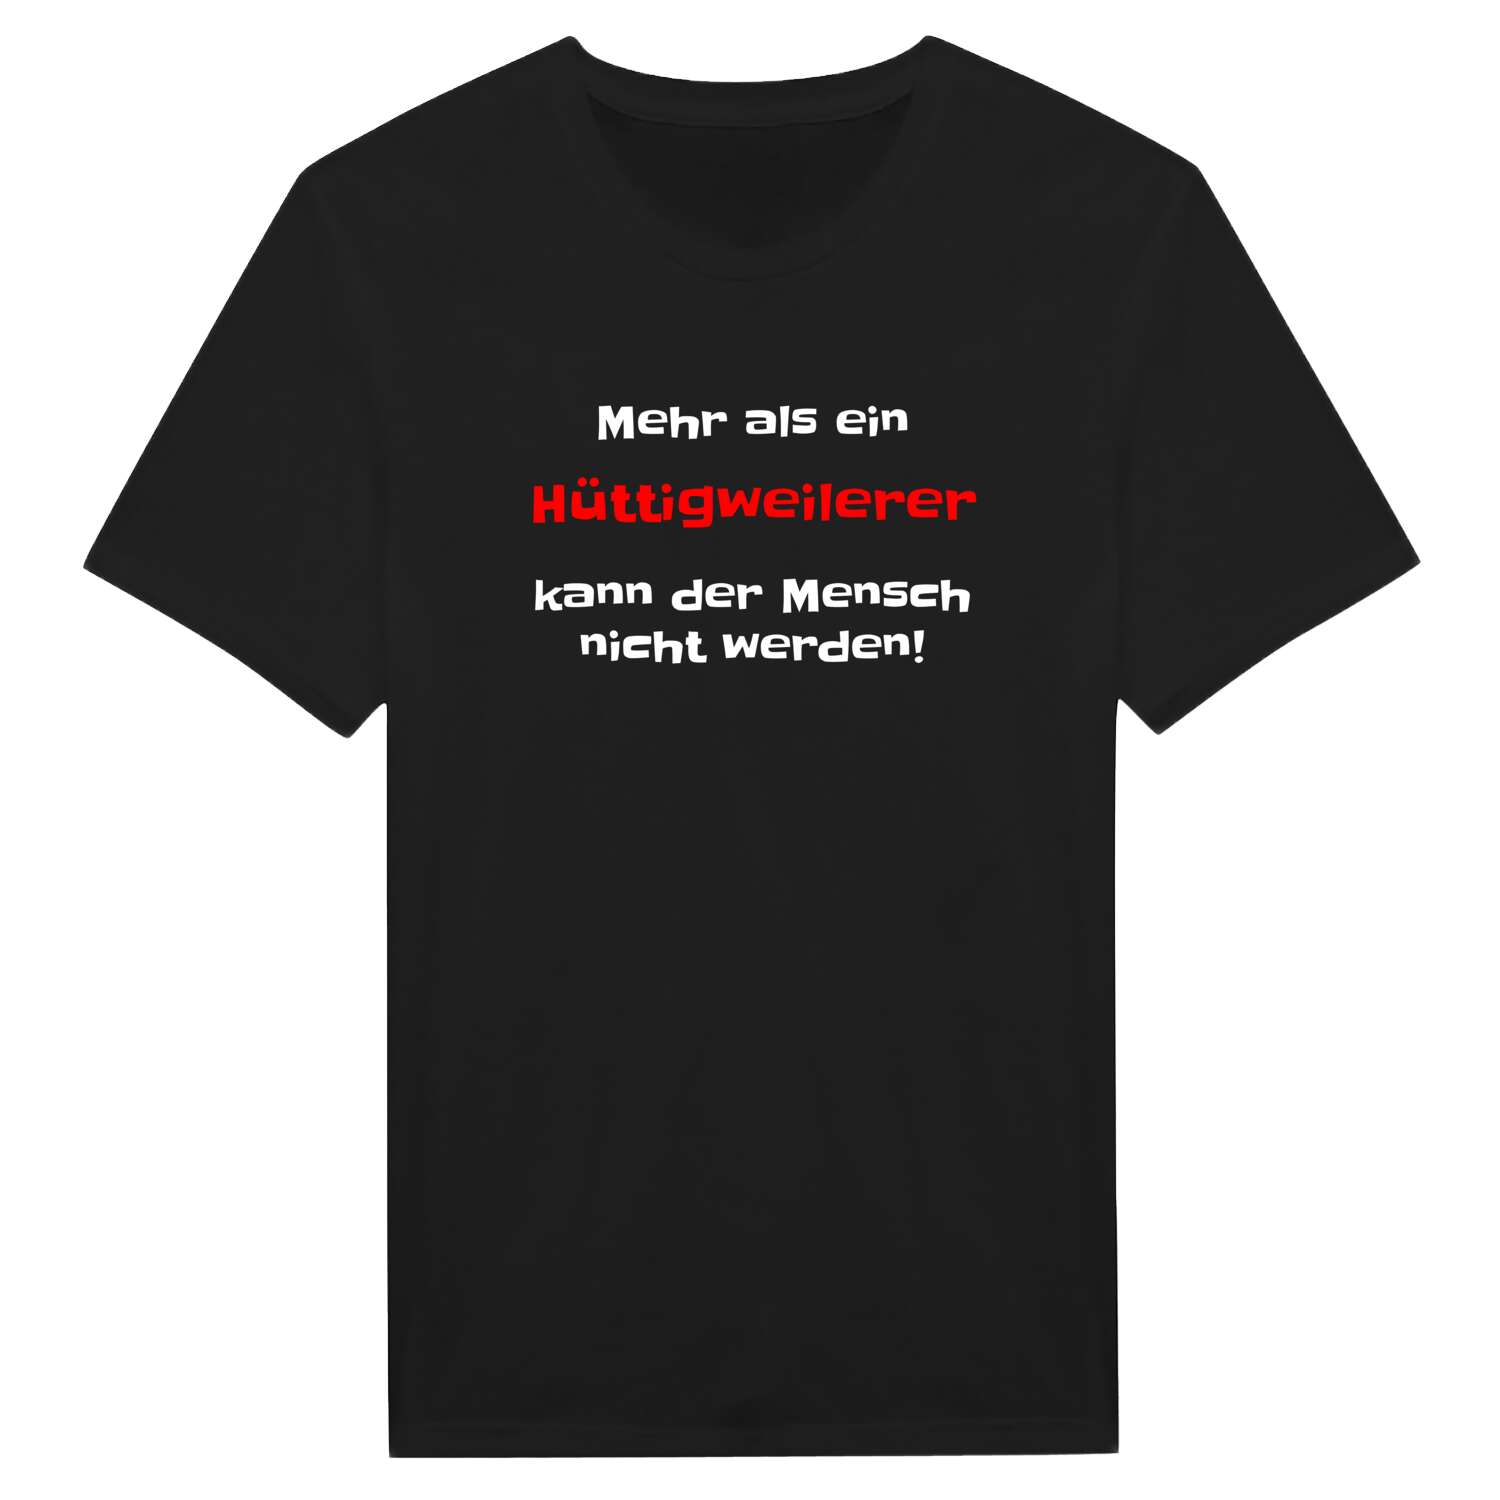 Hüttigweiler T-Shirt »Mehr als ein«